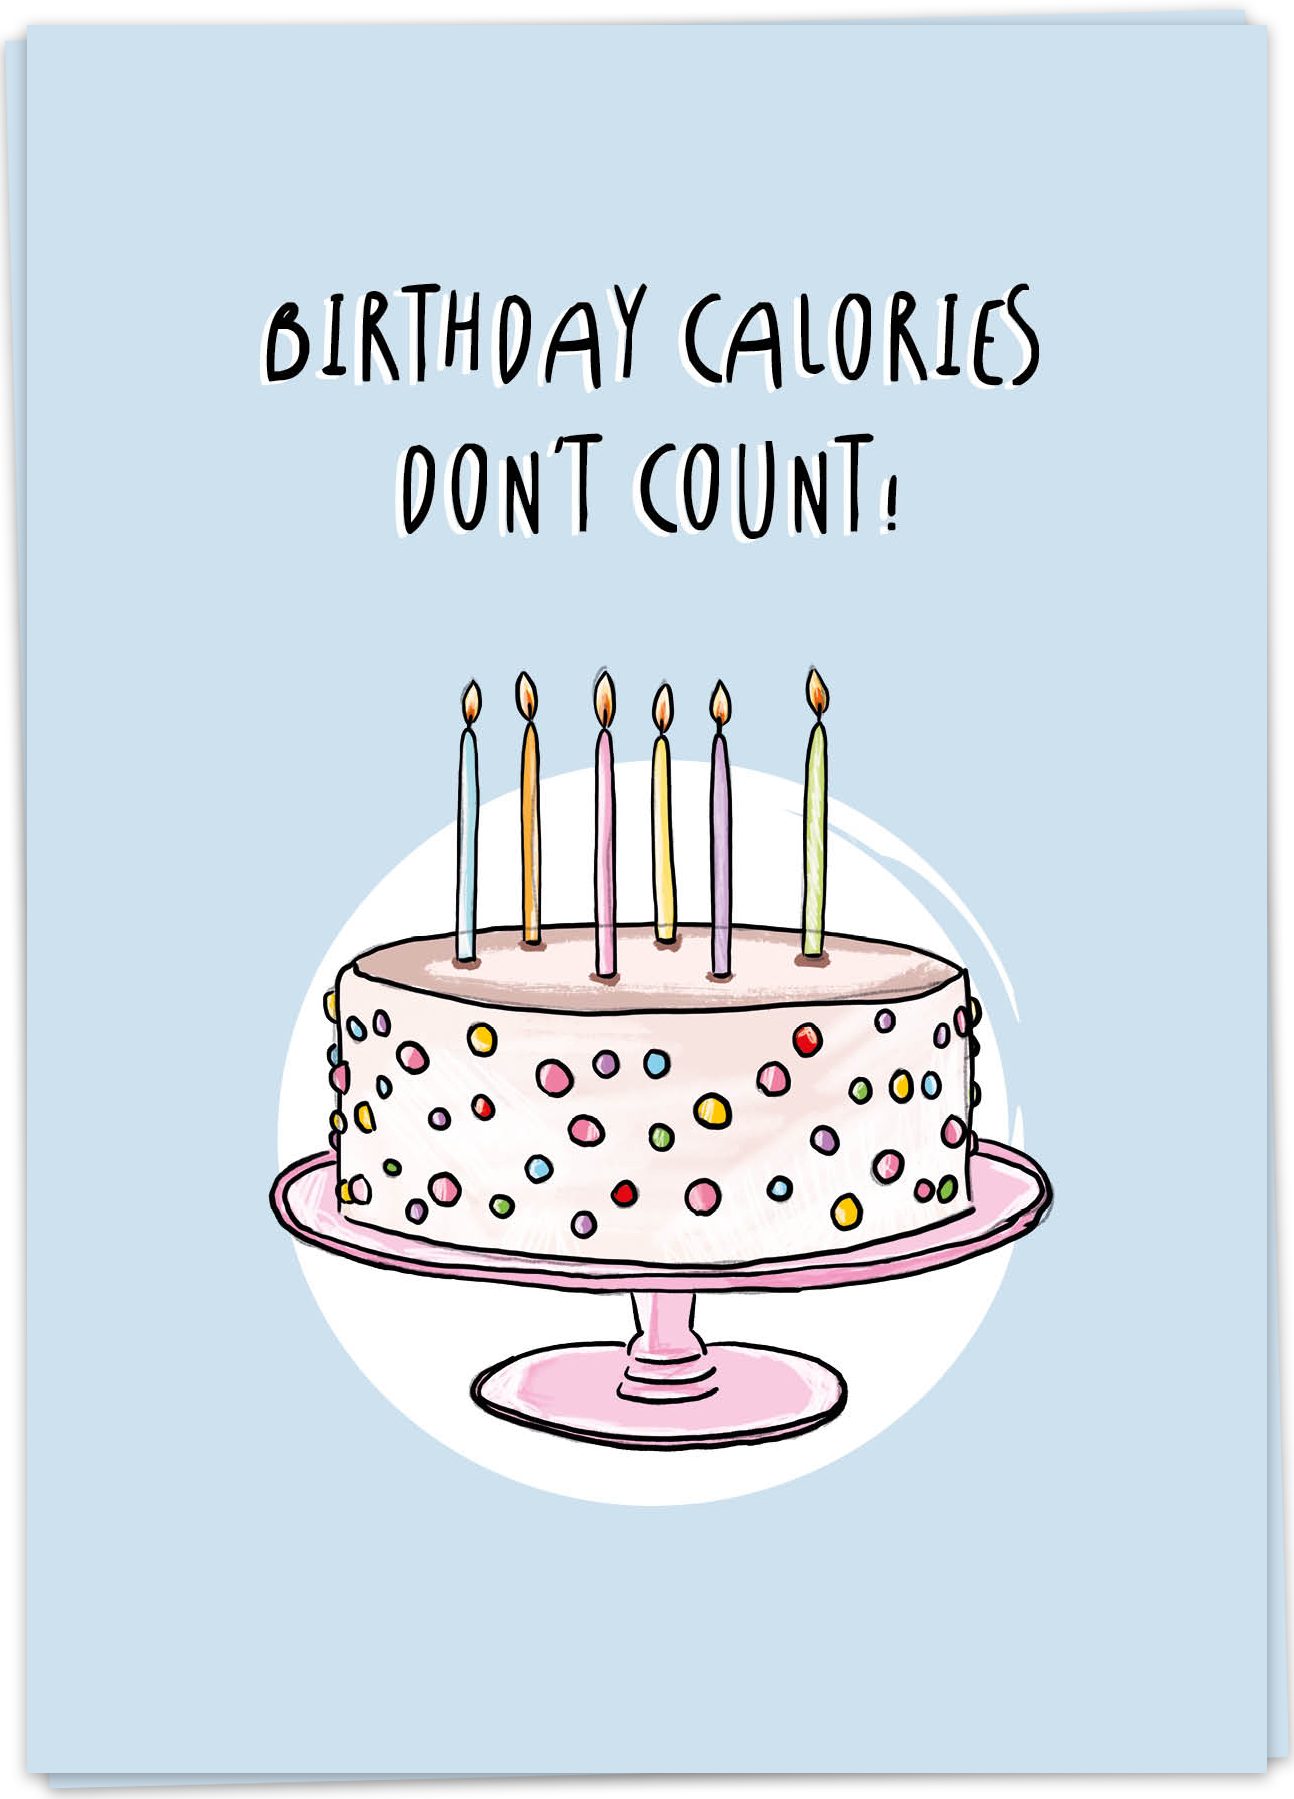 Birthday calories